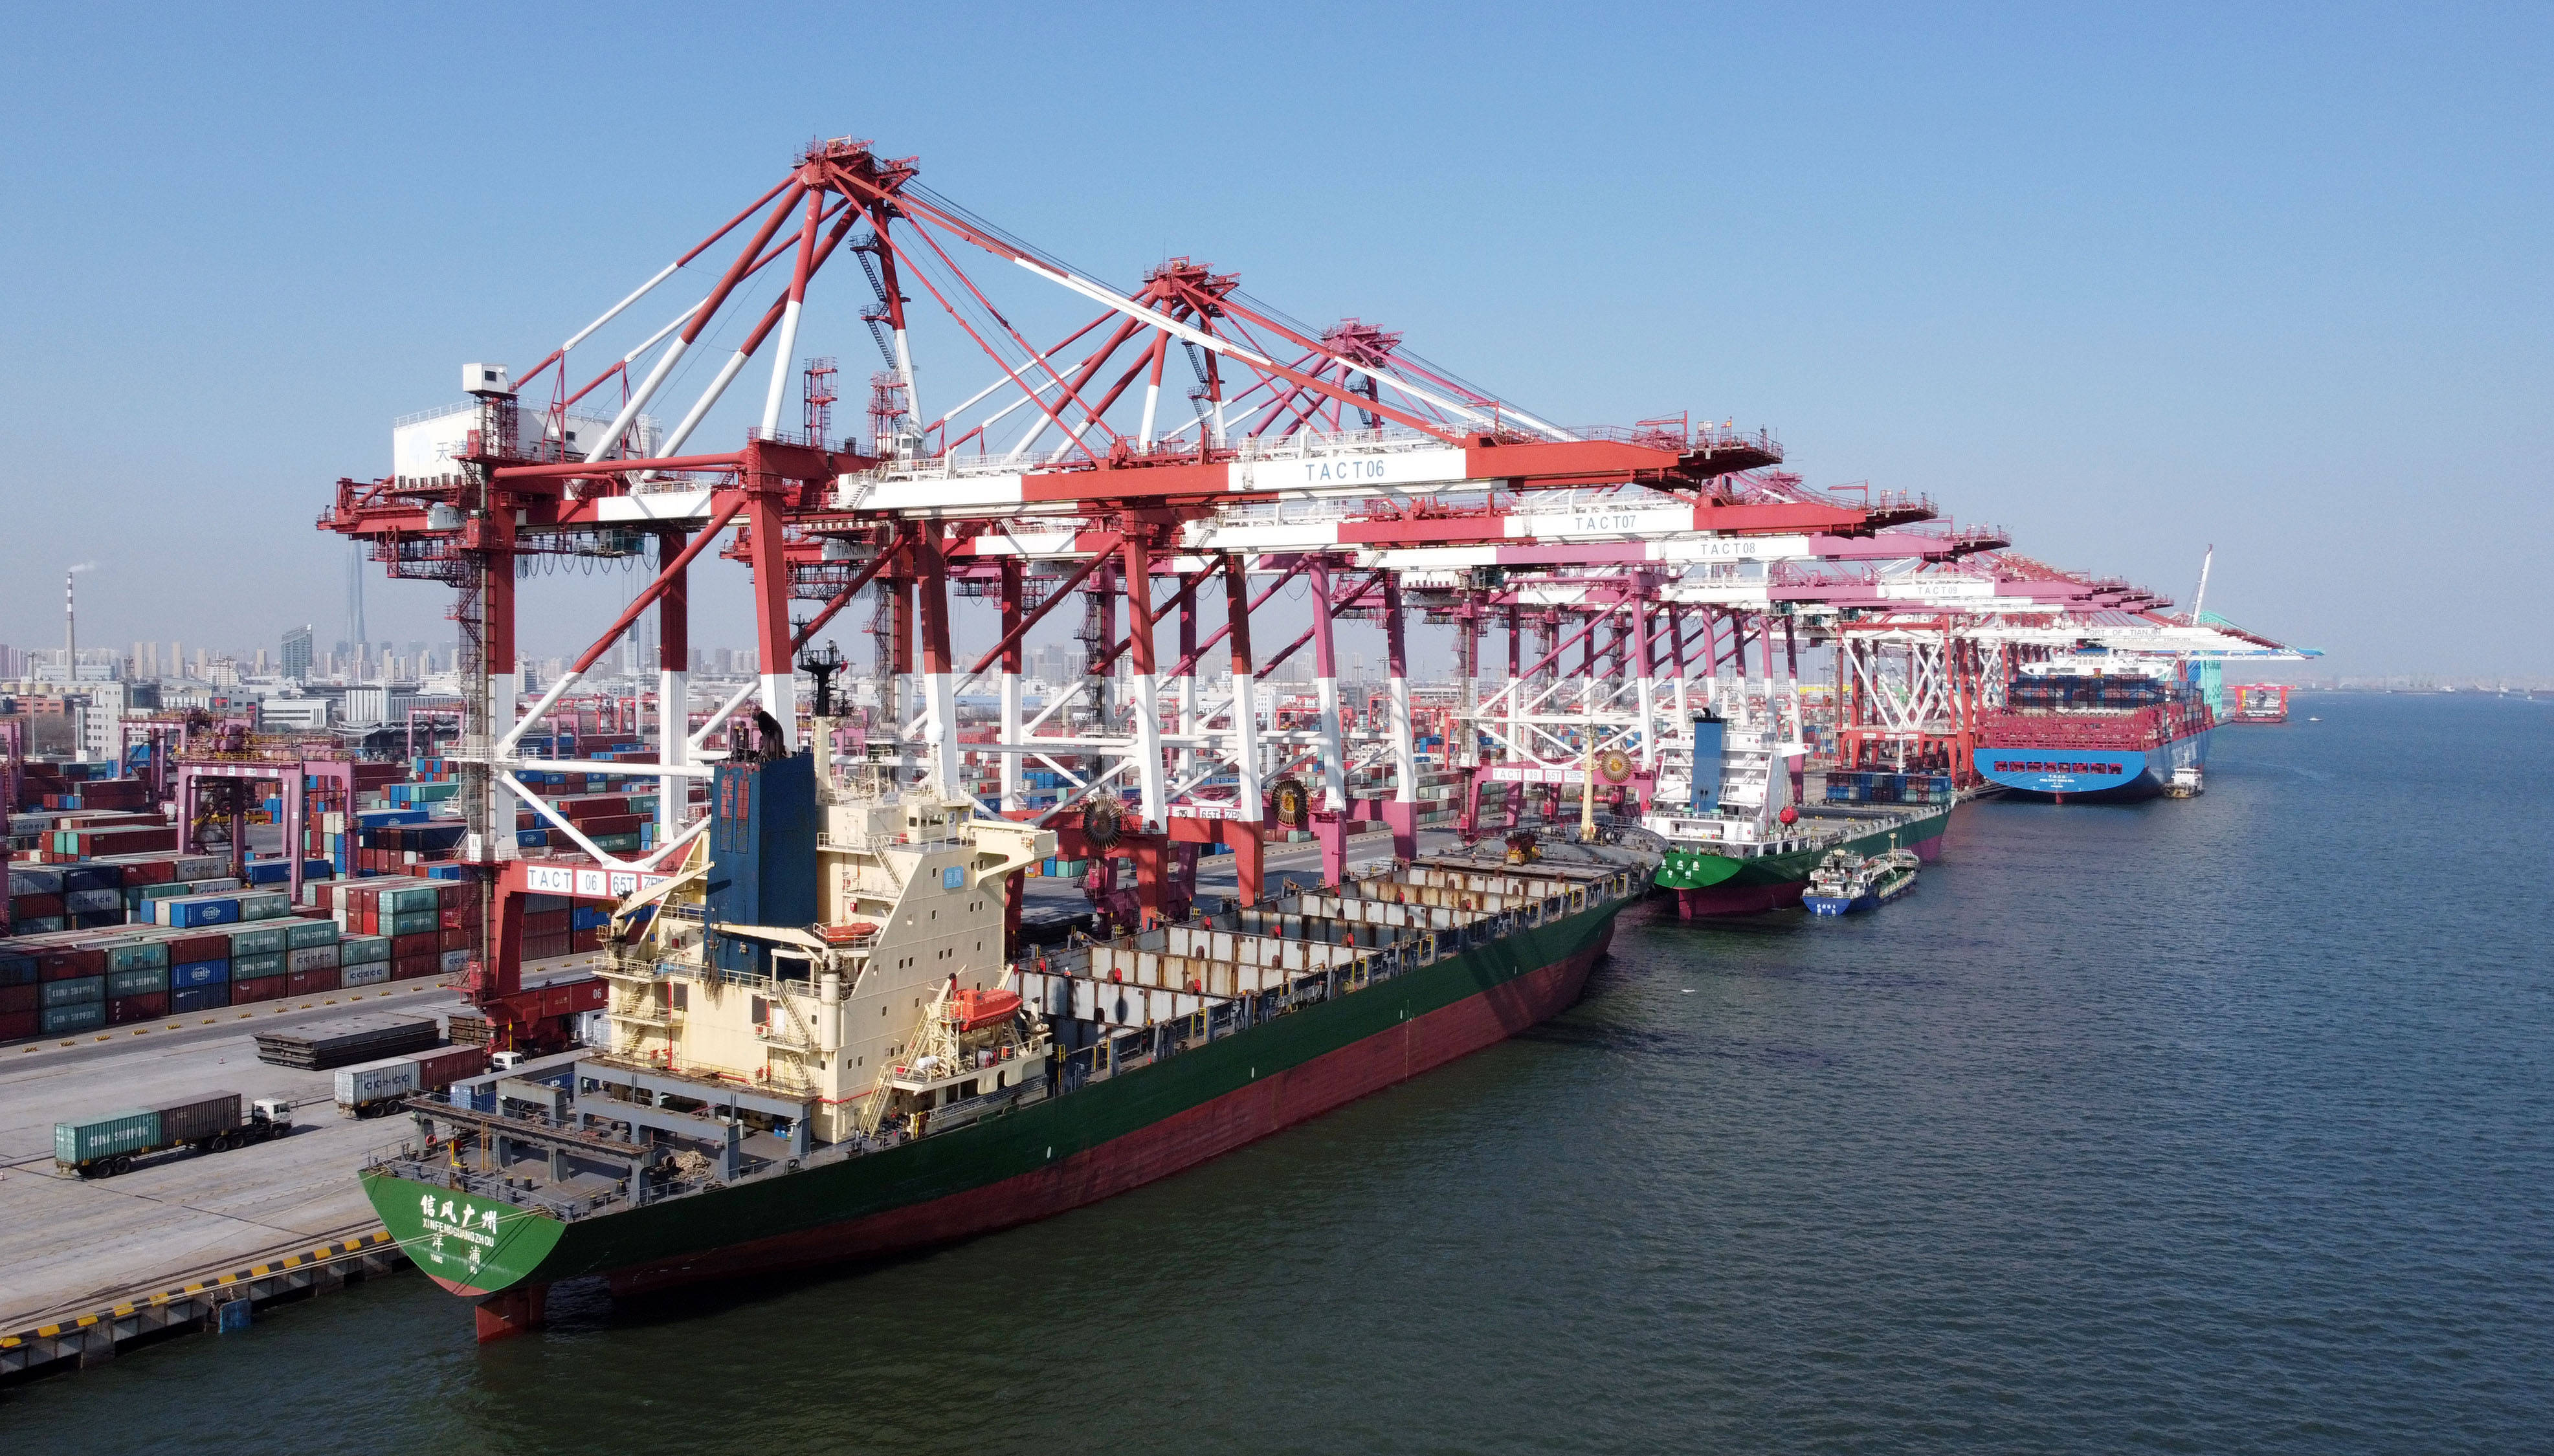 2月22日,货轮停靠在天津港联盟国际集装箱码头(无人机照片).